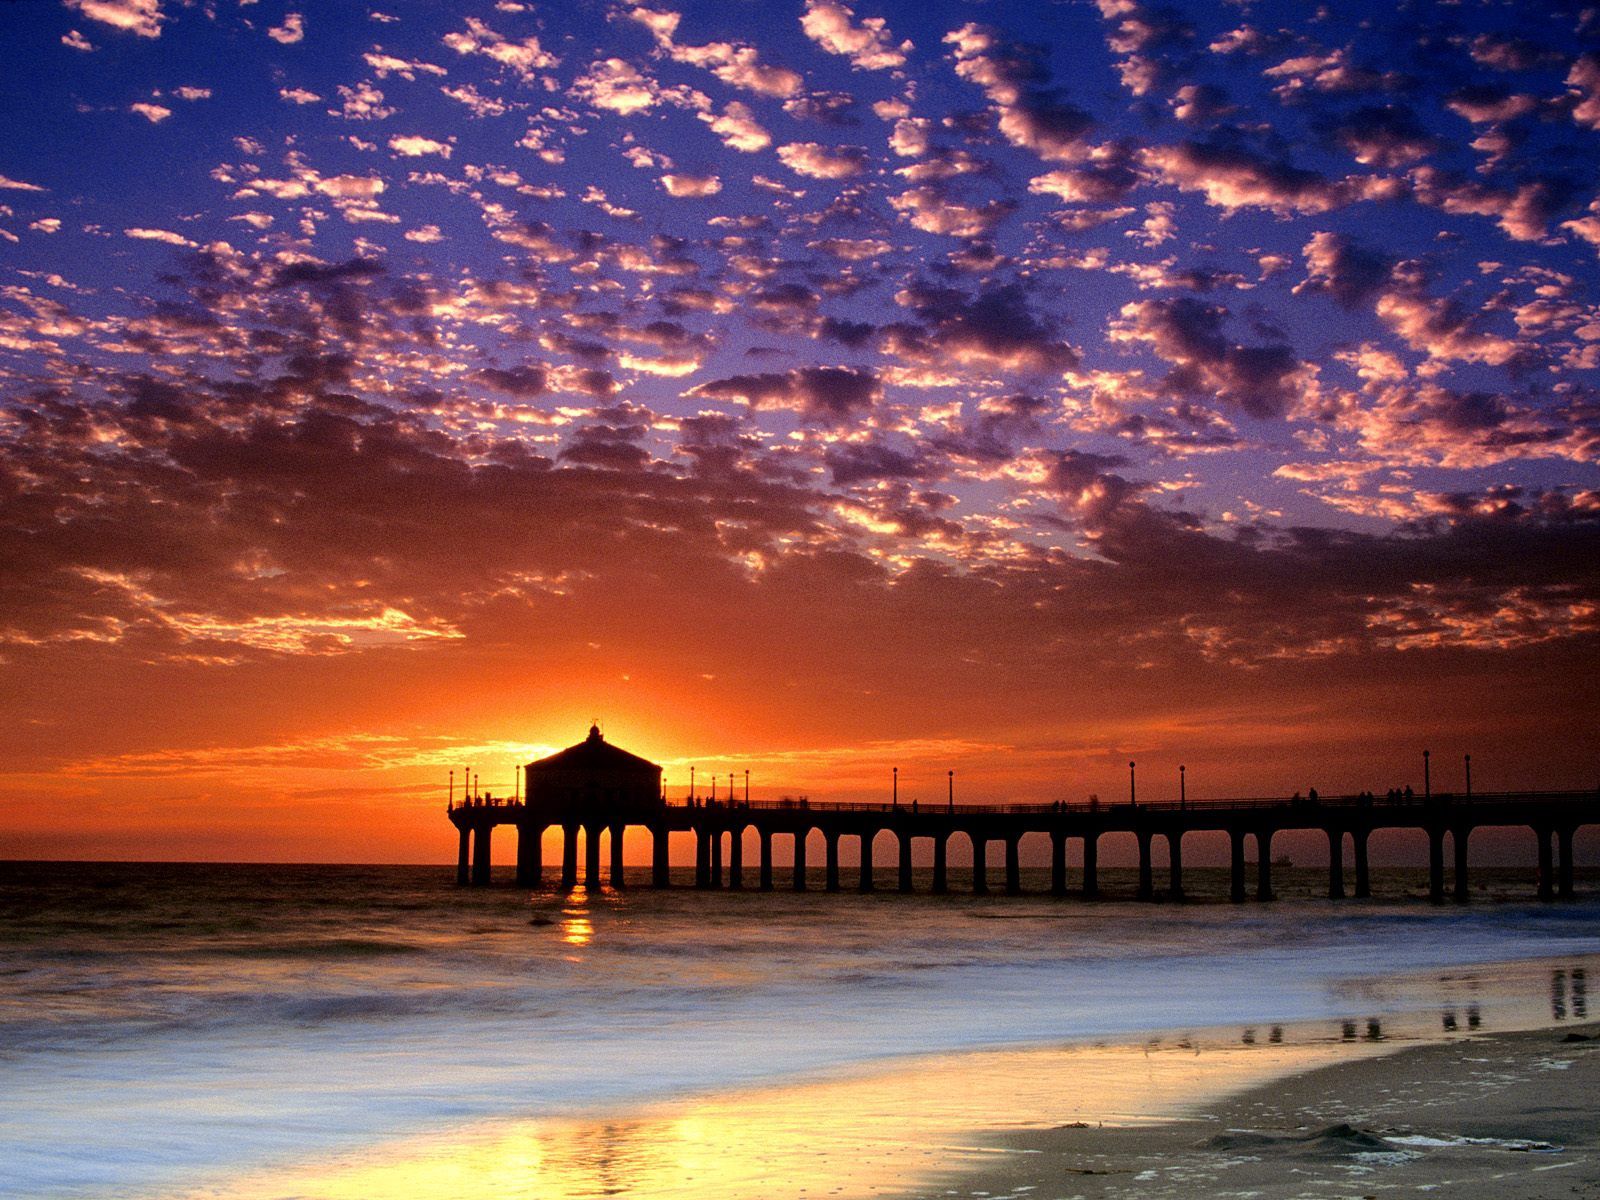 Handy-Wallpaper Sun, Clouds, Ufer, Bank, Abend, Sky, Natur, Sunset, Seebrücke, Sea, Pier, Kalifornien, Strand kostenlos herunterladen.